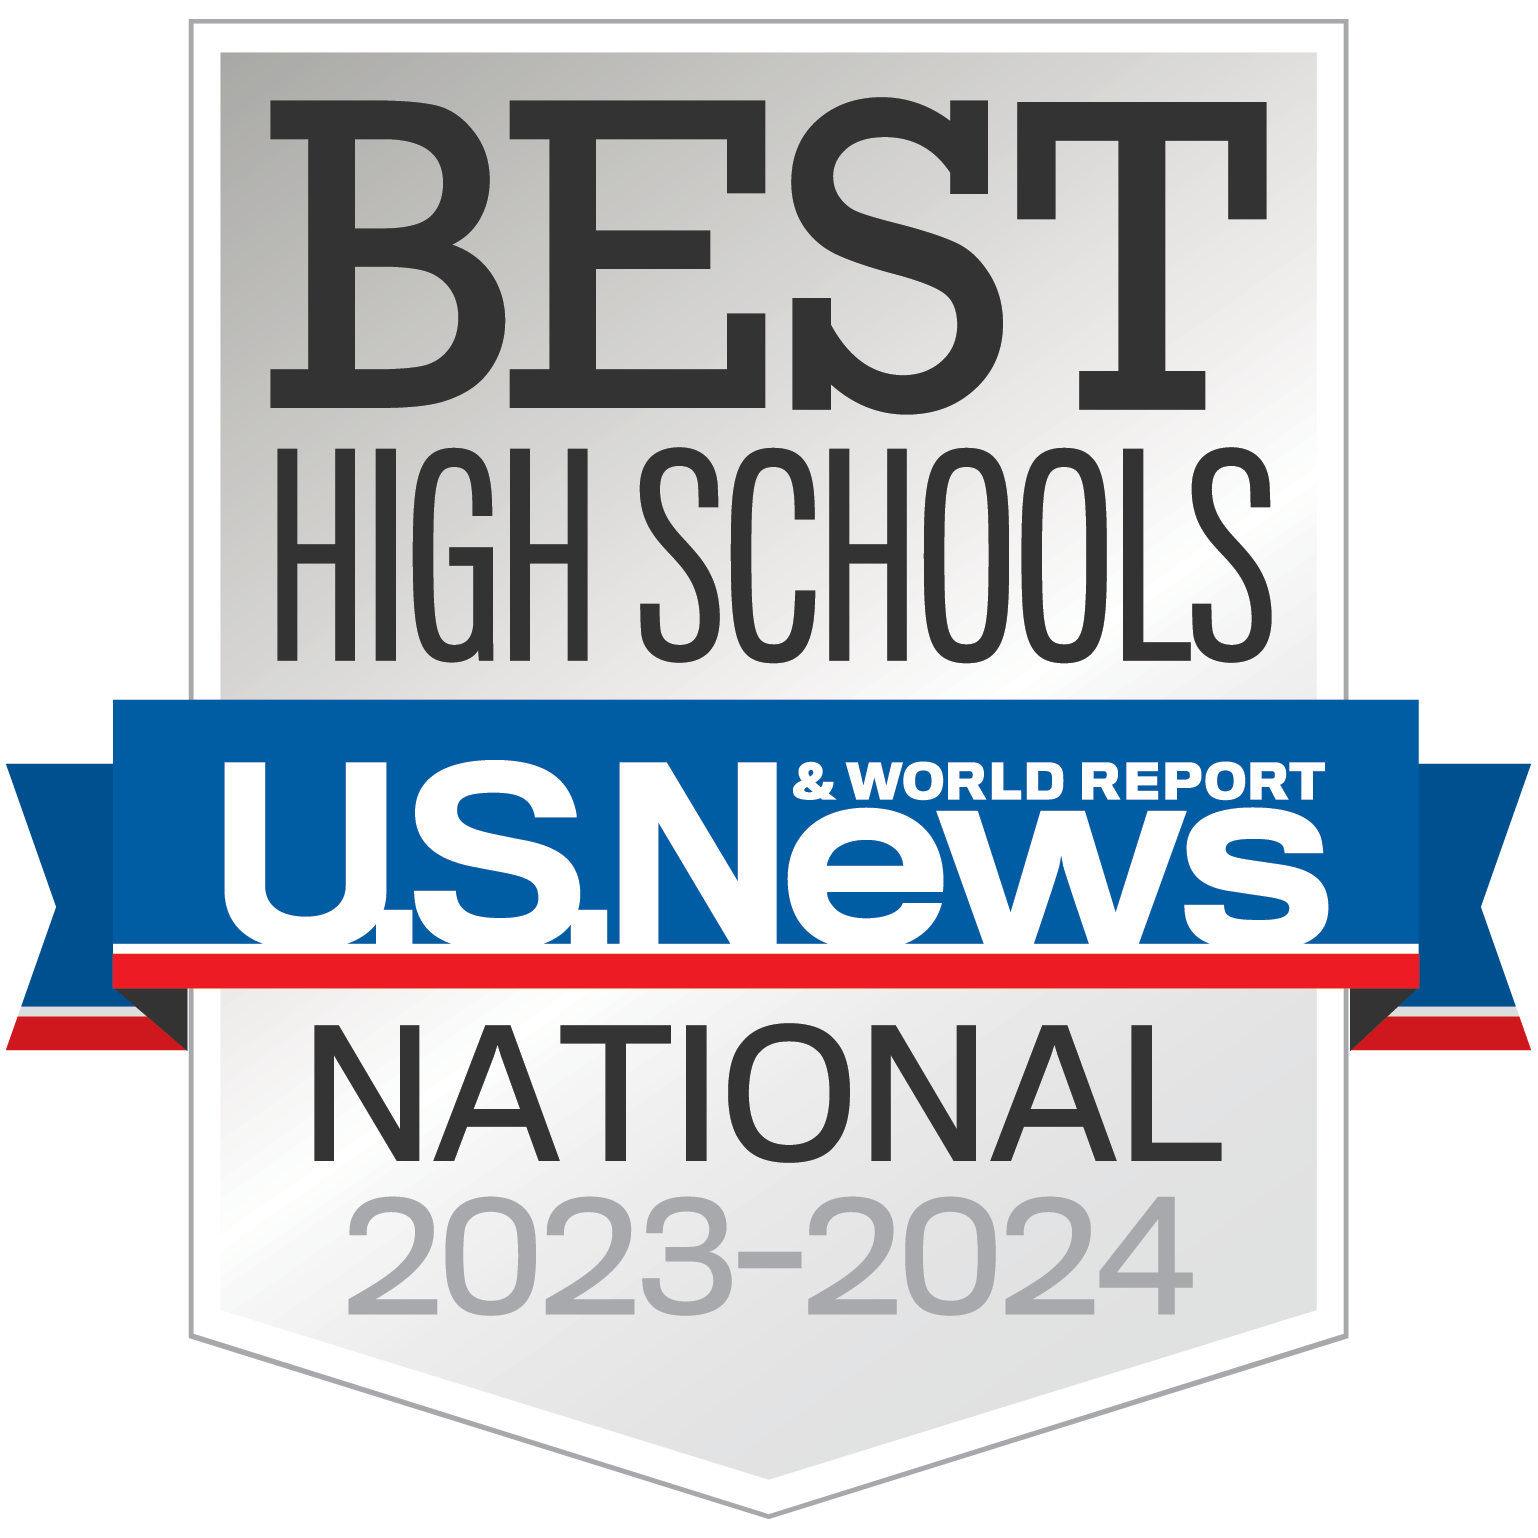 Badge-HighSchools-National-Year